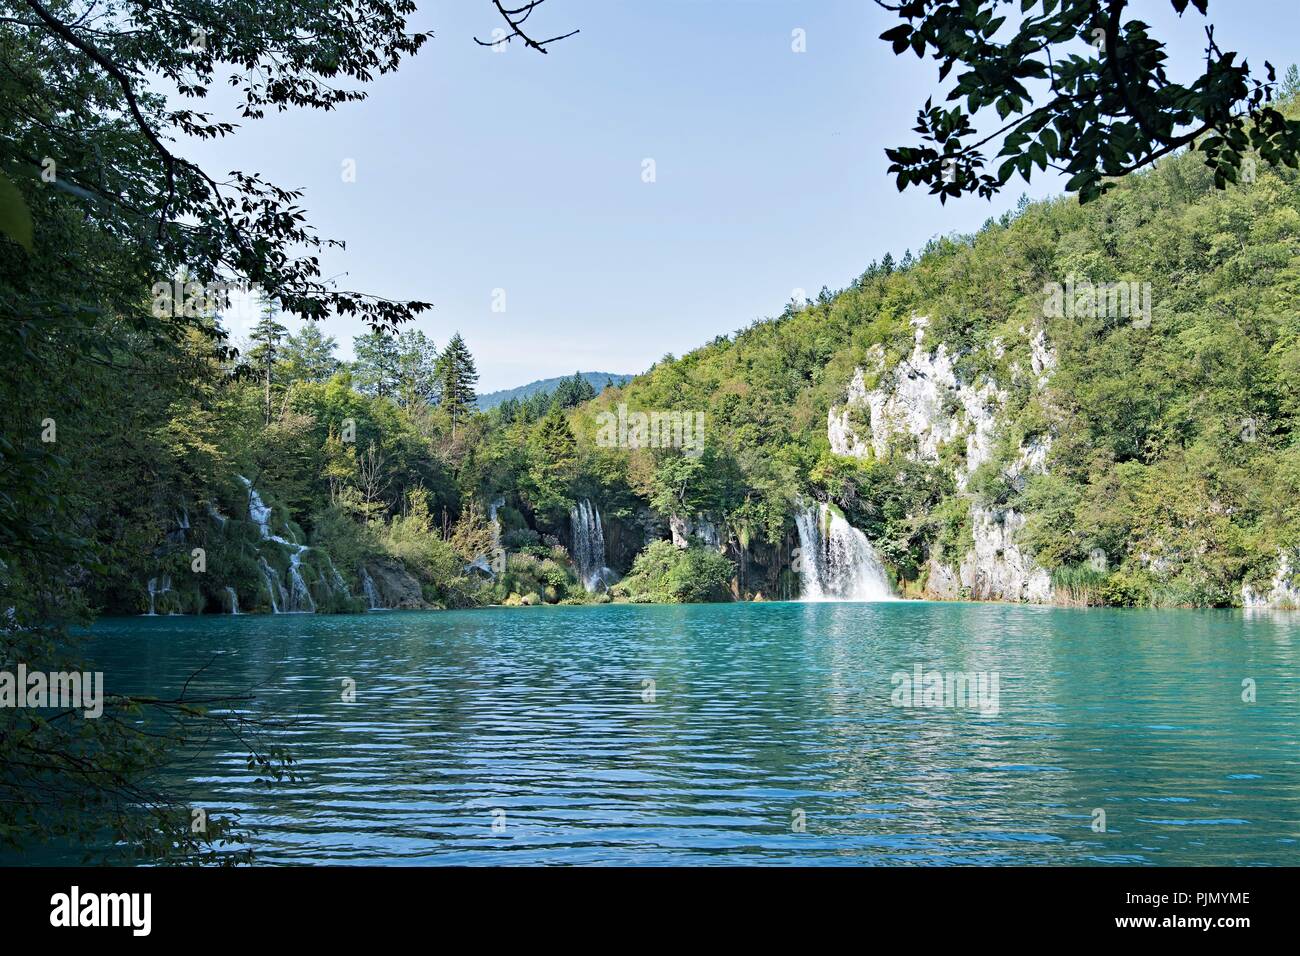 Le parc national des Lacs de Plitvice est le plus populaire de la Croatie une attraction touristique et lieu de beauté naturels protégés. Banque D'Images